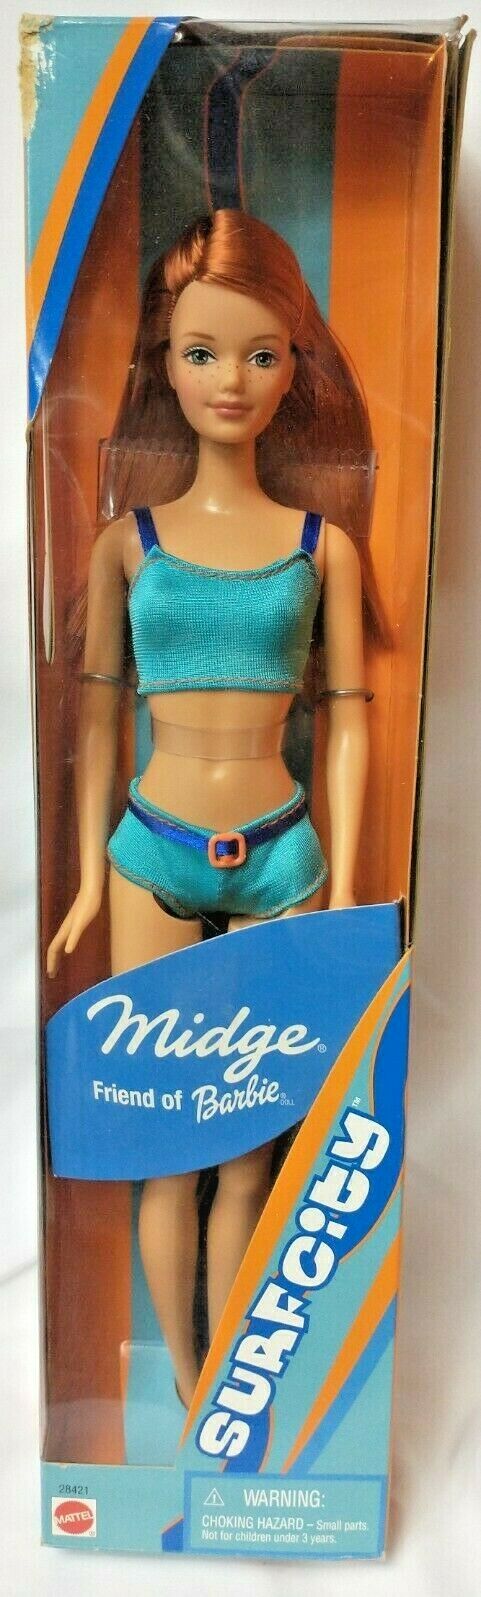 2000 Mattel Surf City Midge Friend Of Barbie #28421 Blue Swimsuit